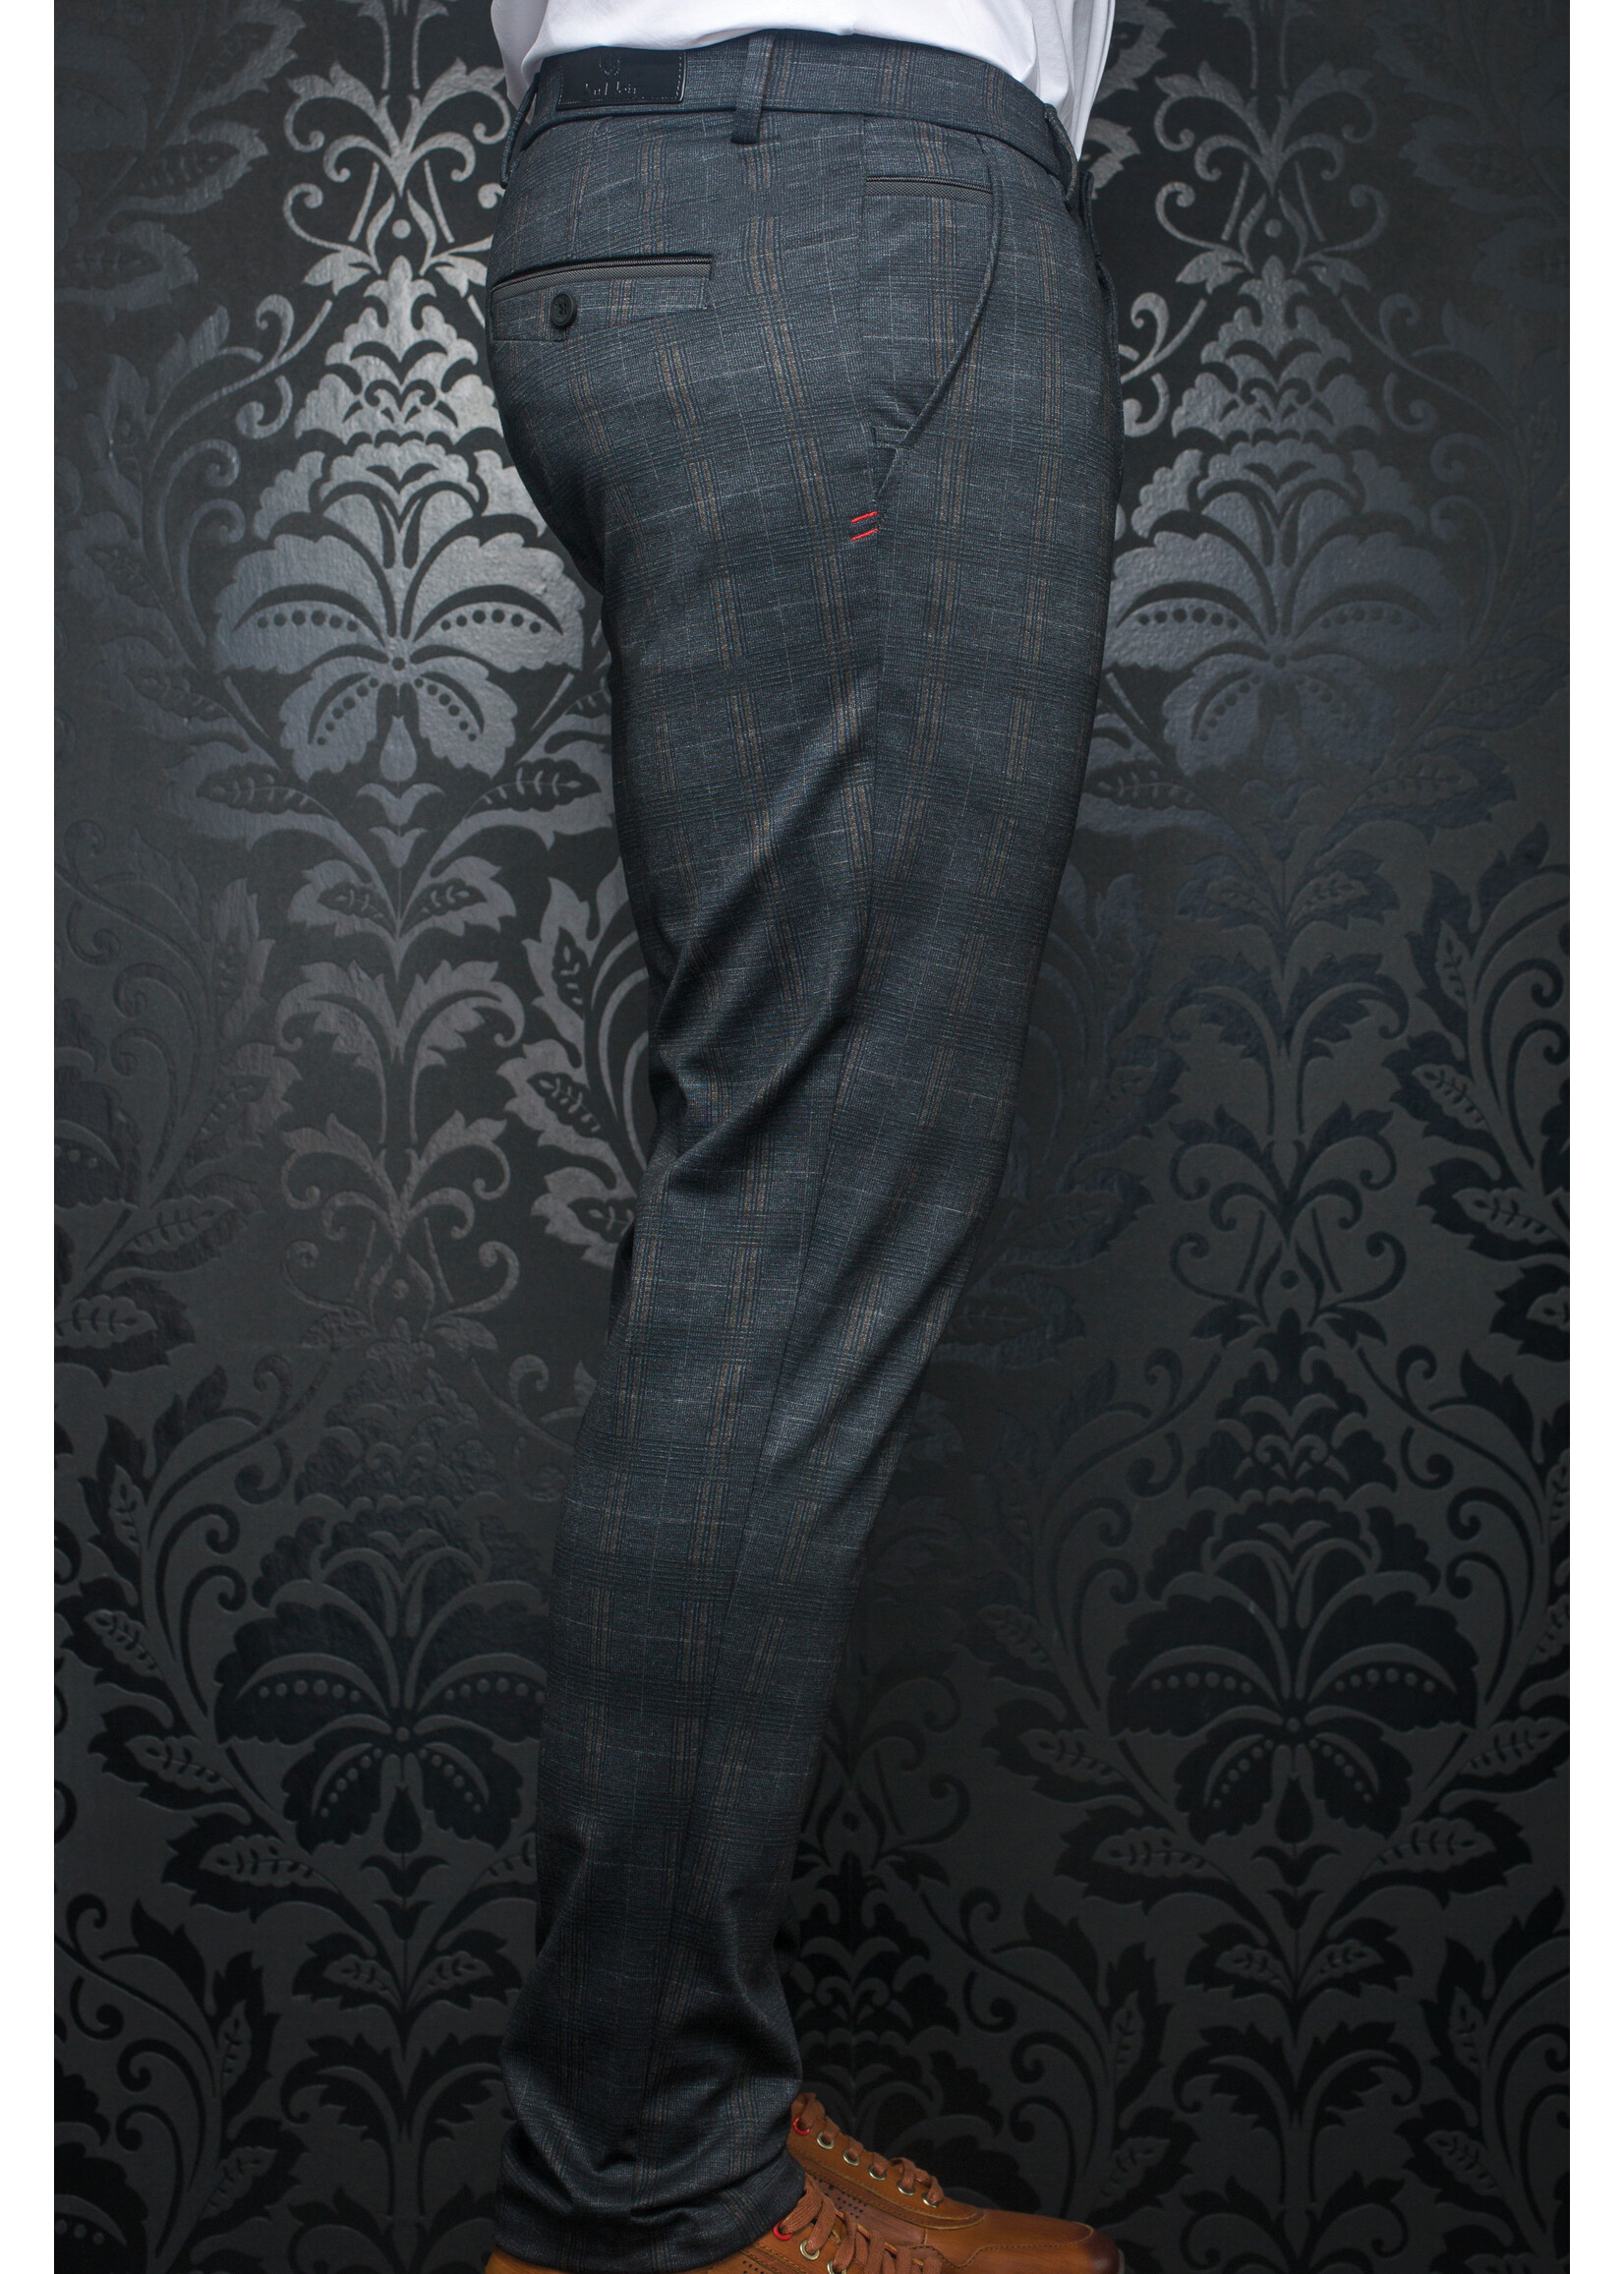 AU NOIR Men's stretch dress pants-Beretta-Benedict Black